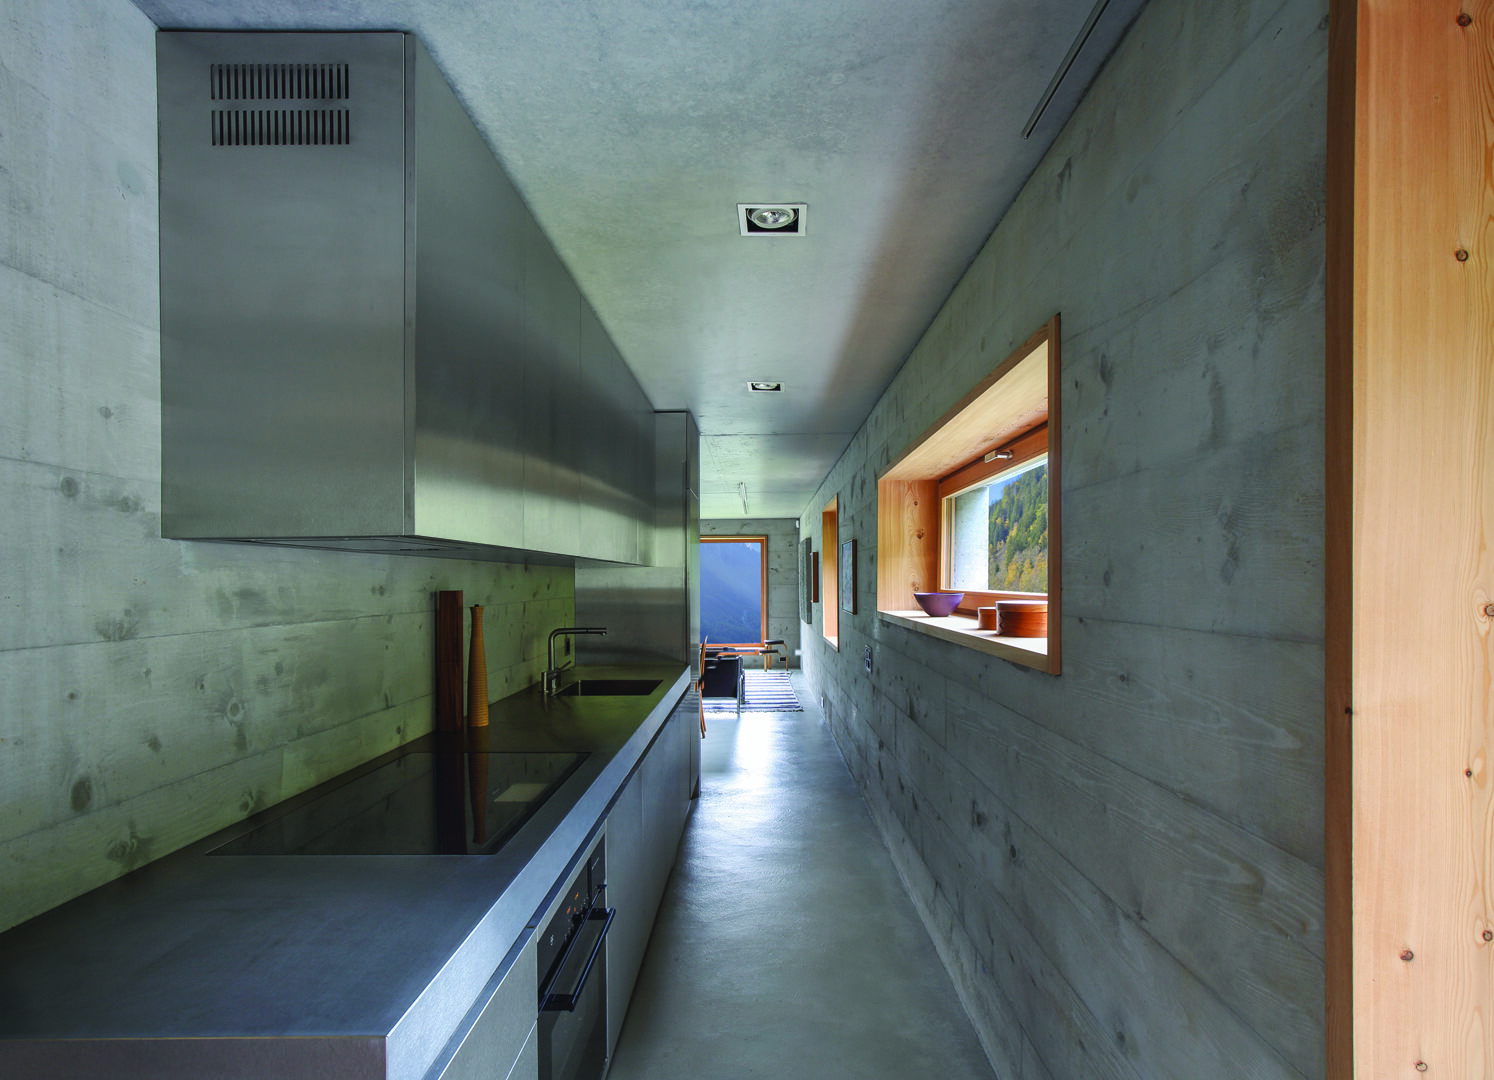 Strato_design_Non Plus Ultra_bespoke kitchen project in Val Bregaglia_Architektur Bureau Ruch_mat stainless steel_16a_ph Simonetti